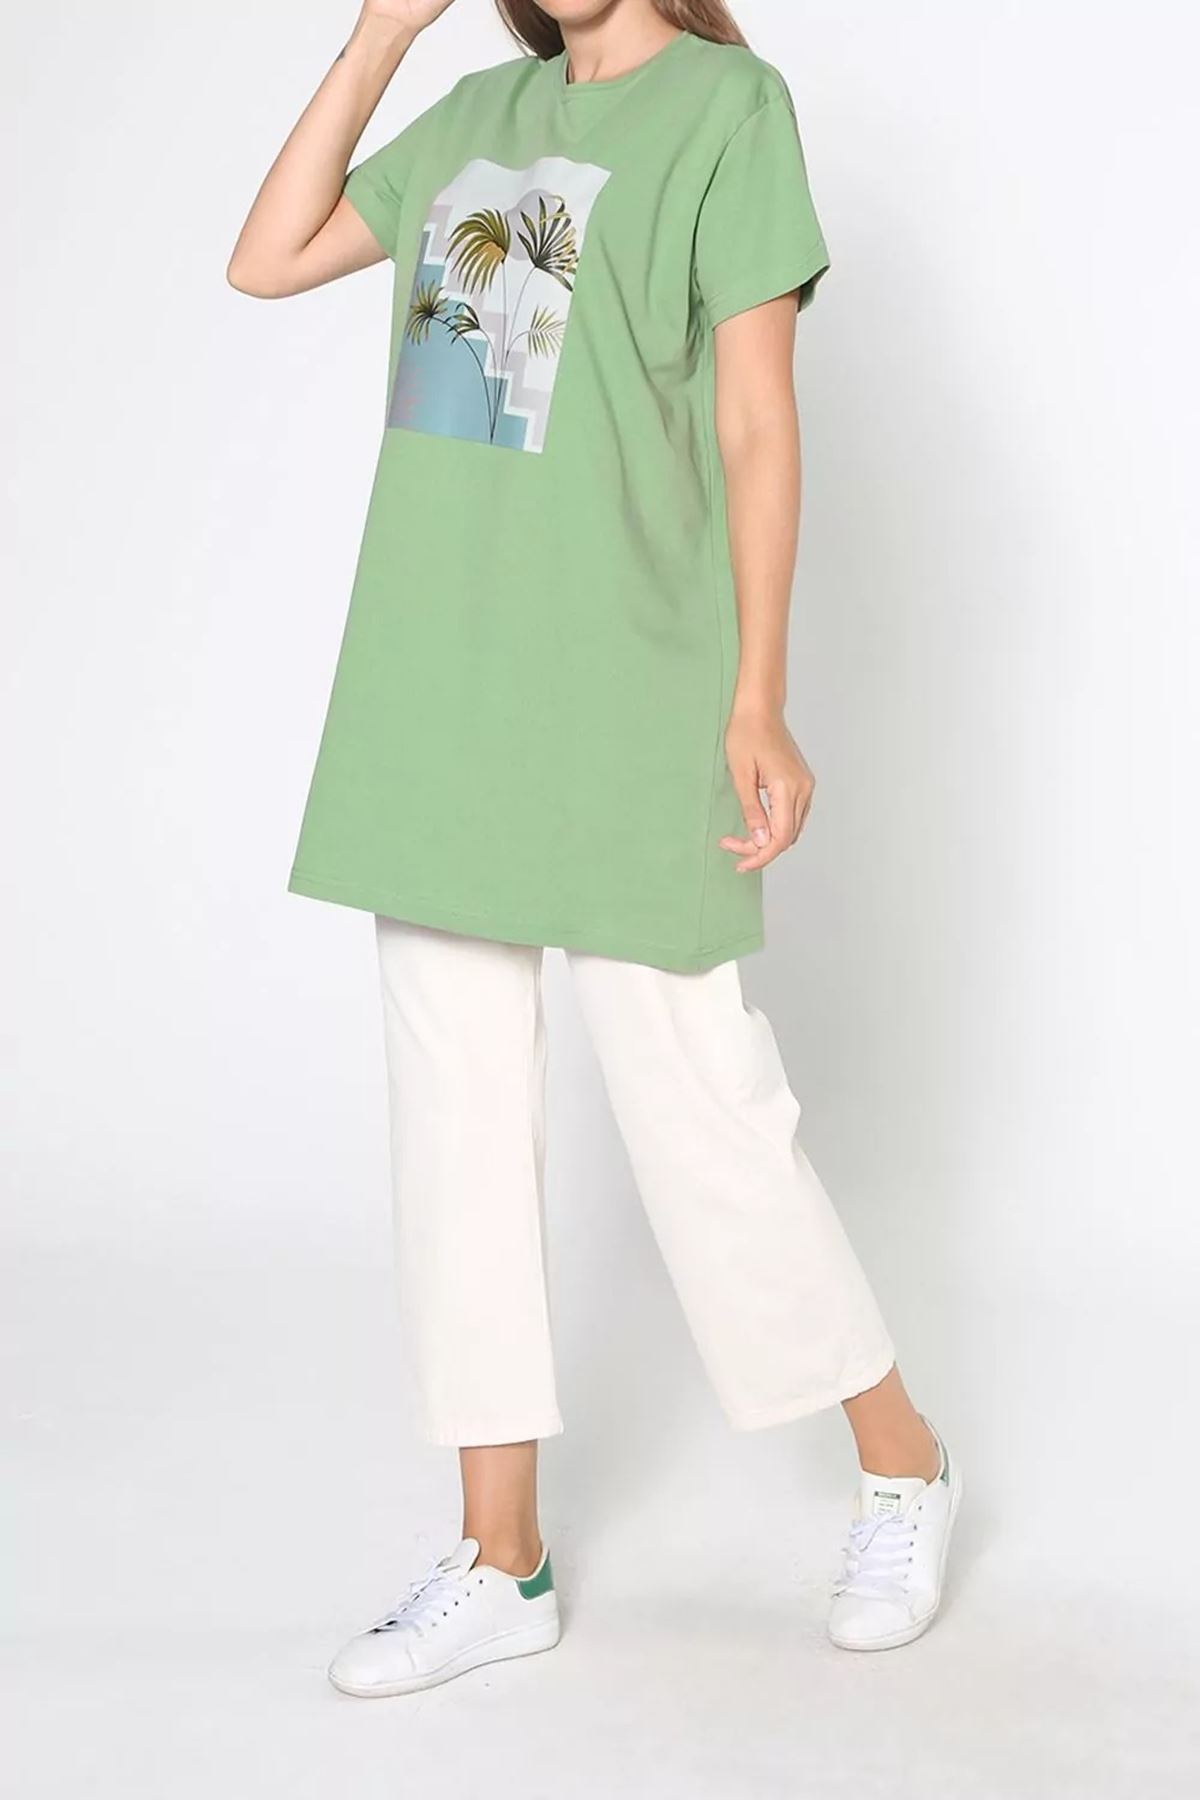 Kadın Baskılı Uzun T-Shirt - Fıstık Yeşili